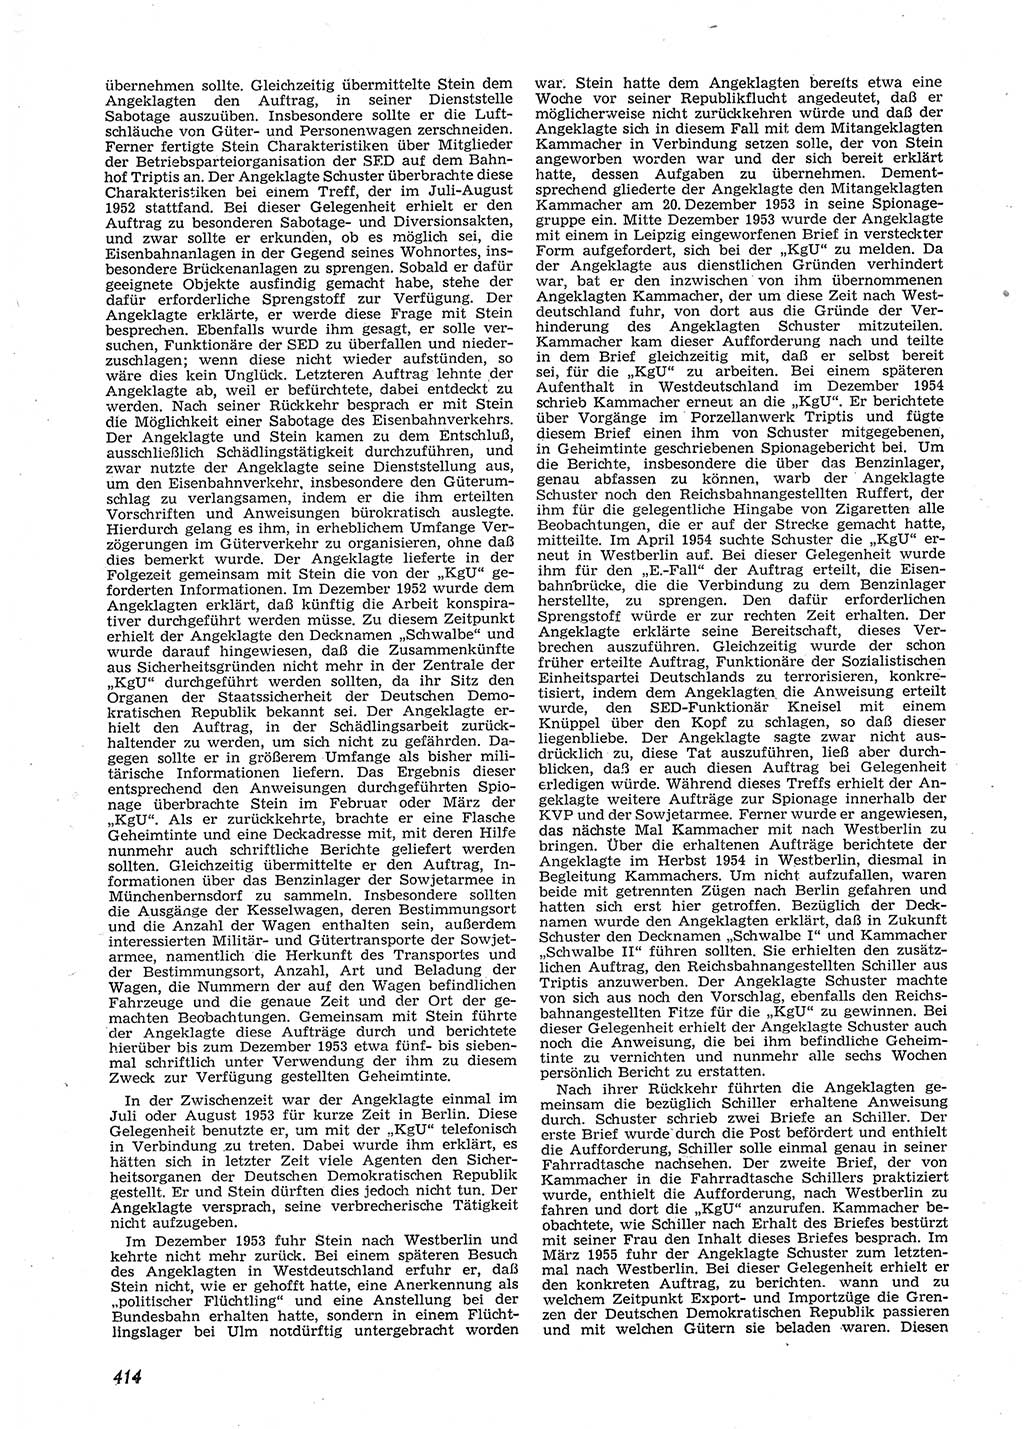 Neue Justiz (NJ), Zeitschrift für Recht und Rechtswissenschaft [Deutsche Demokratische Republik (DDR)], 9. Jahrgang 1955, Seite 414 (NJ DDR 1955, S. 414)